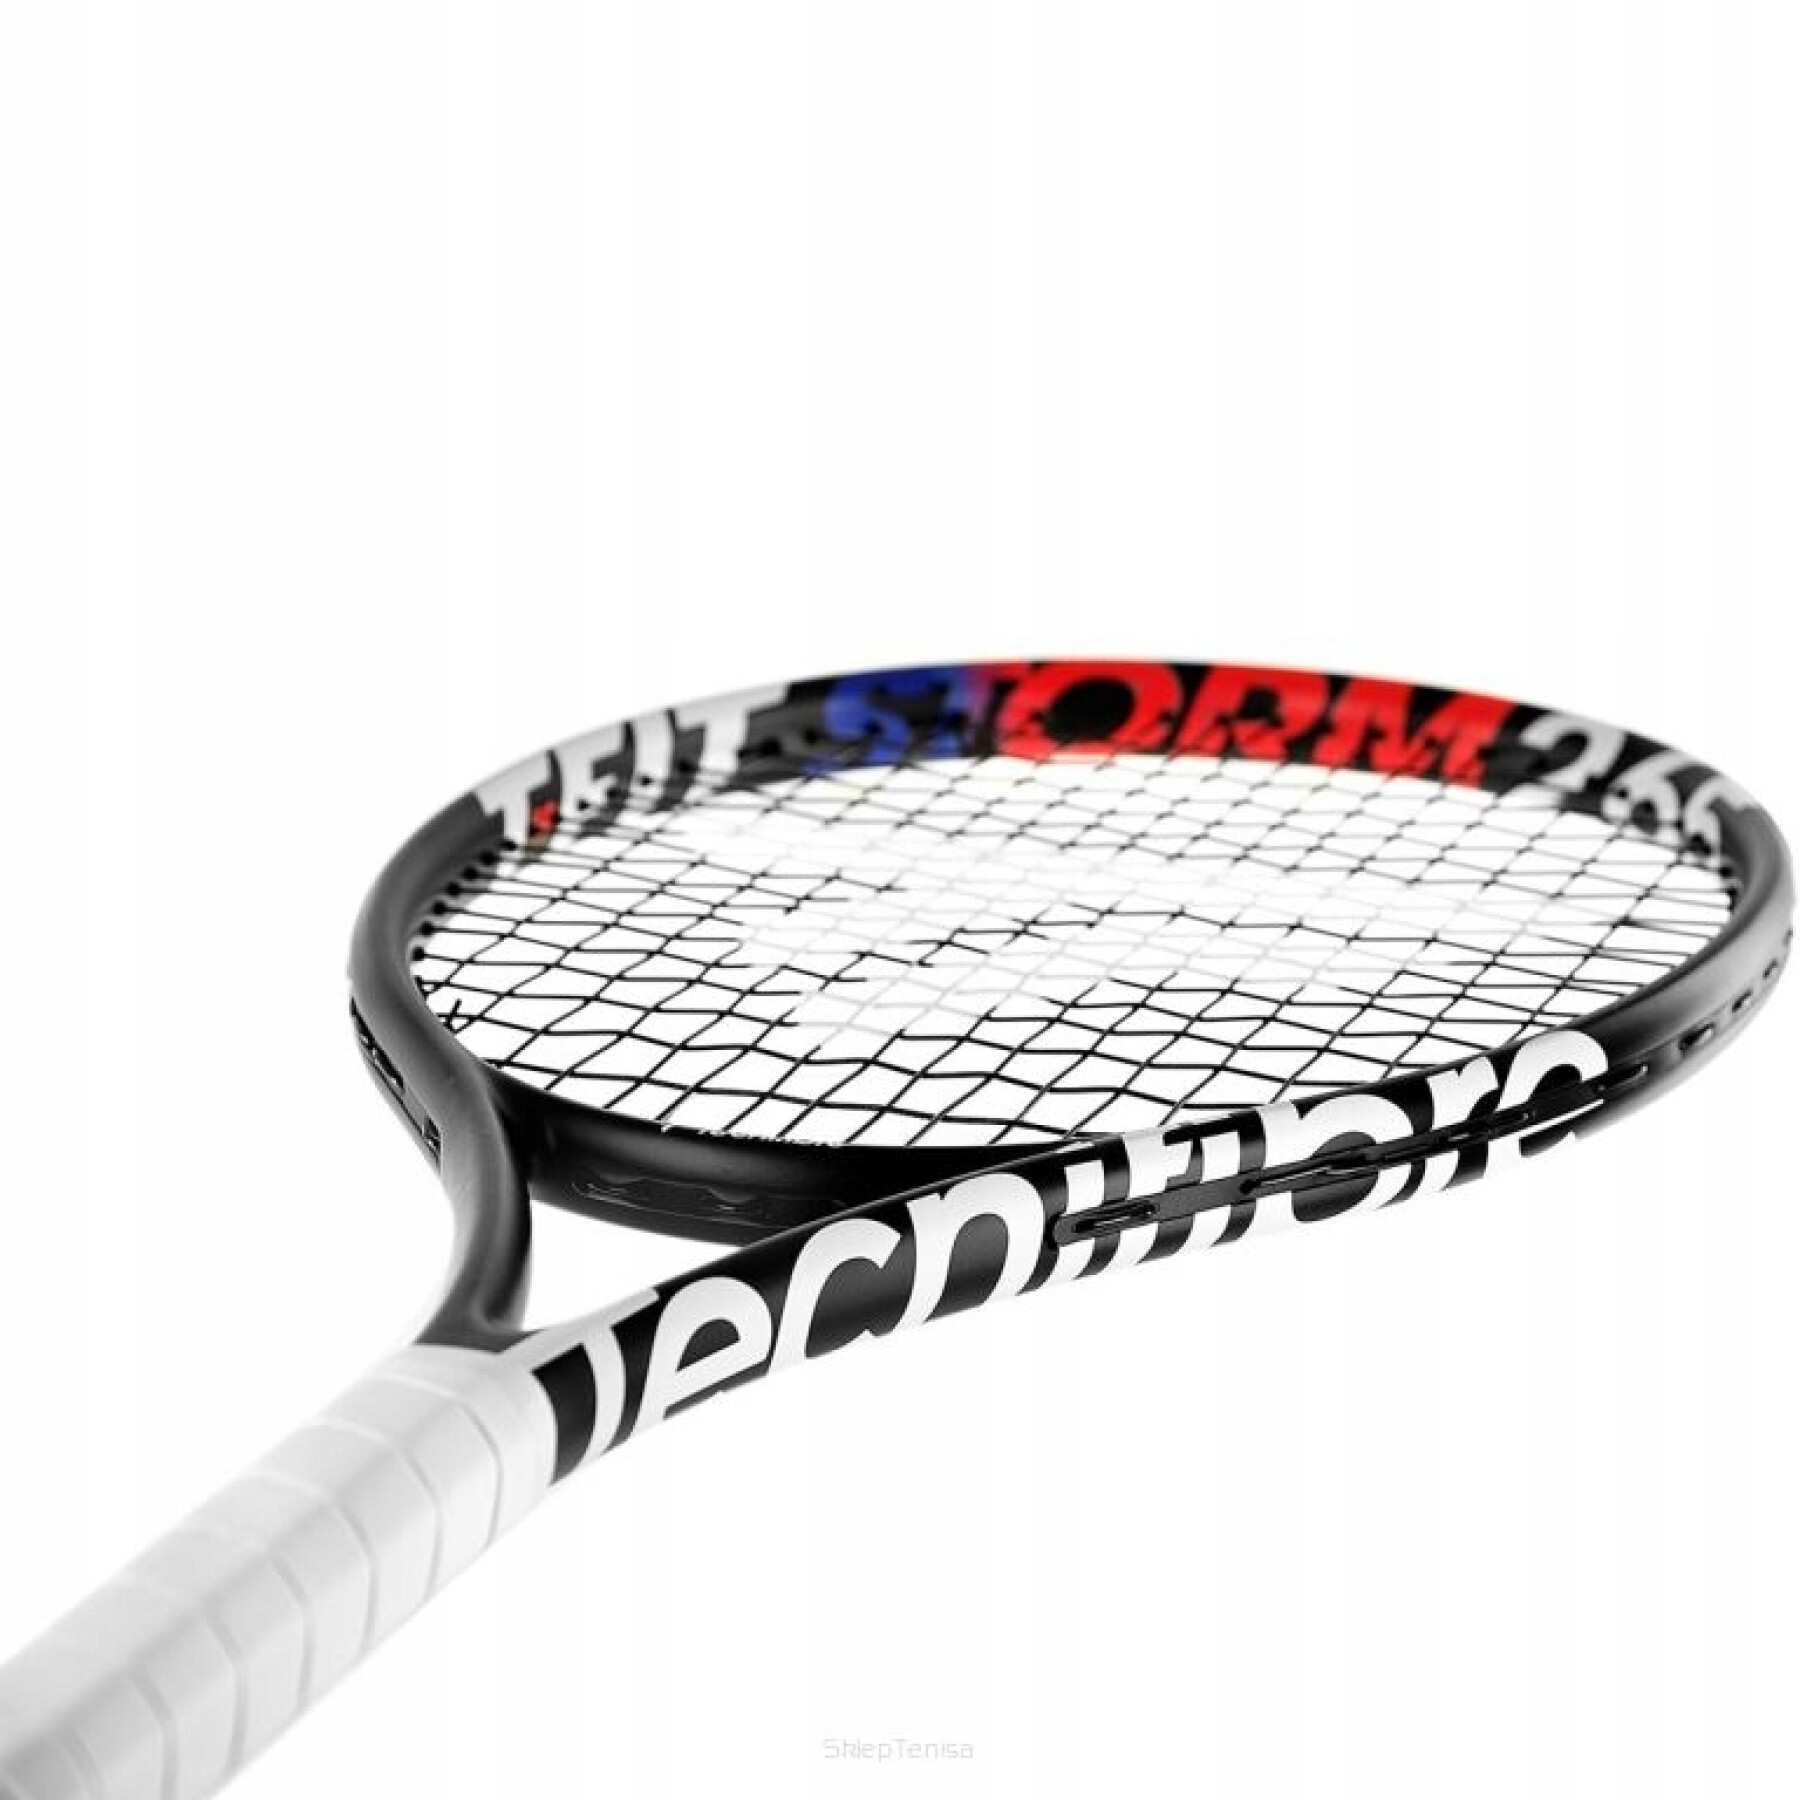 Tennisschläger Tecnifibre TFIT 275 2023